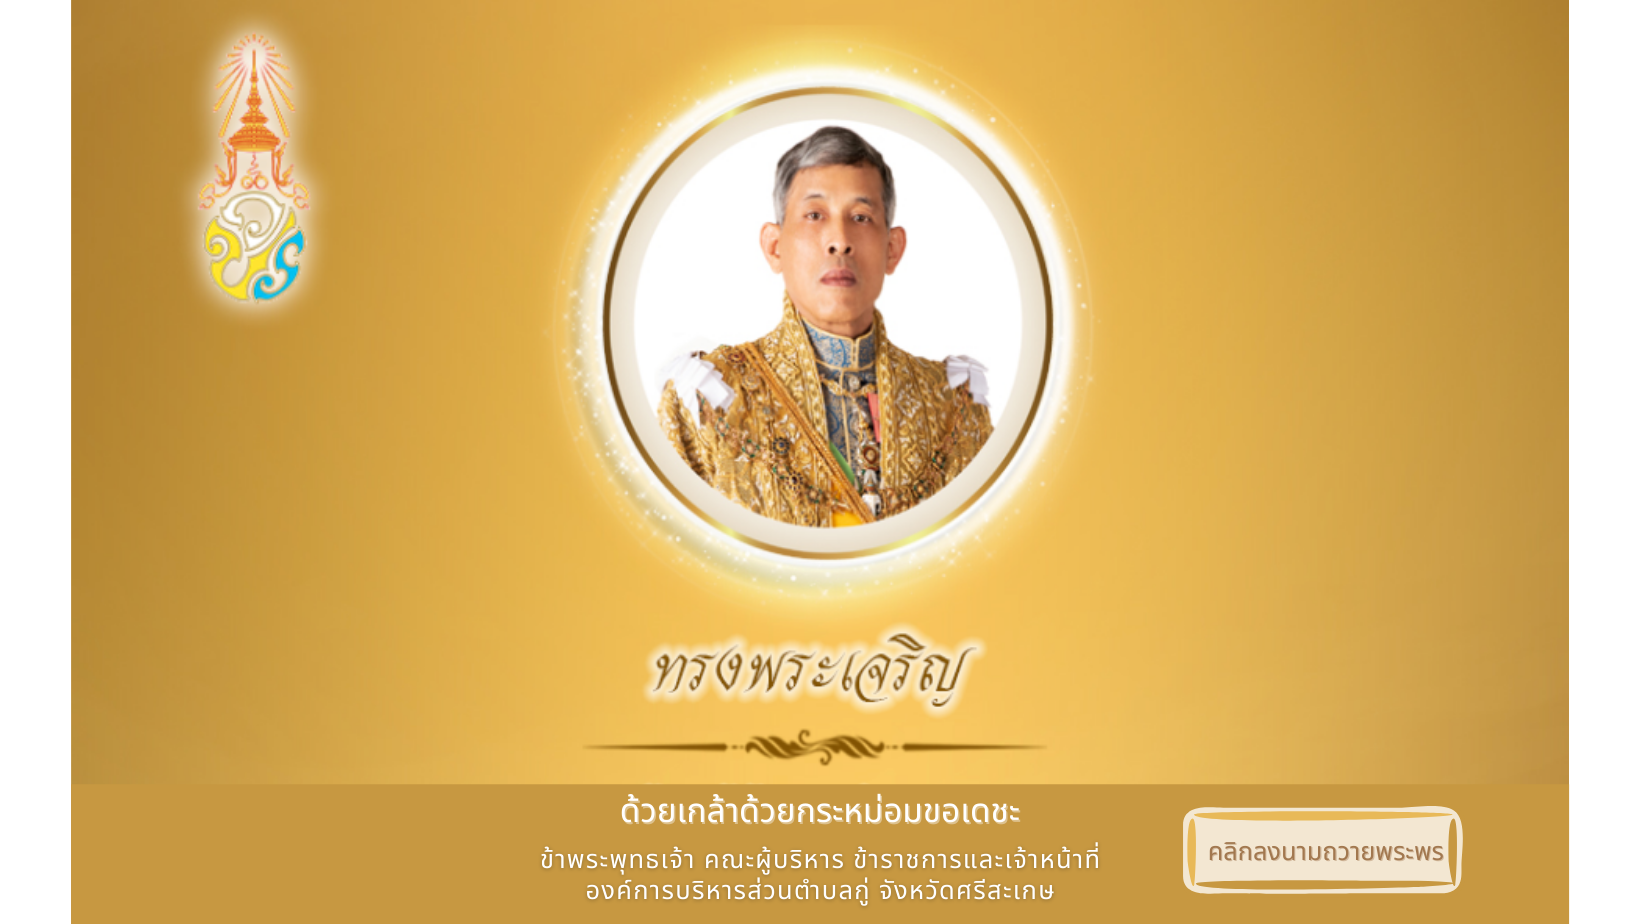 ขอเชิญประชาชนชาวไทย ร่วมลงนามถวายพระพร เนื่องในวันฉัตรมงคล วันที่ 4 พฤษภาคม 2565